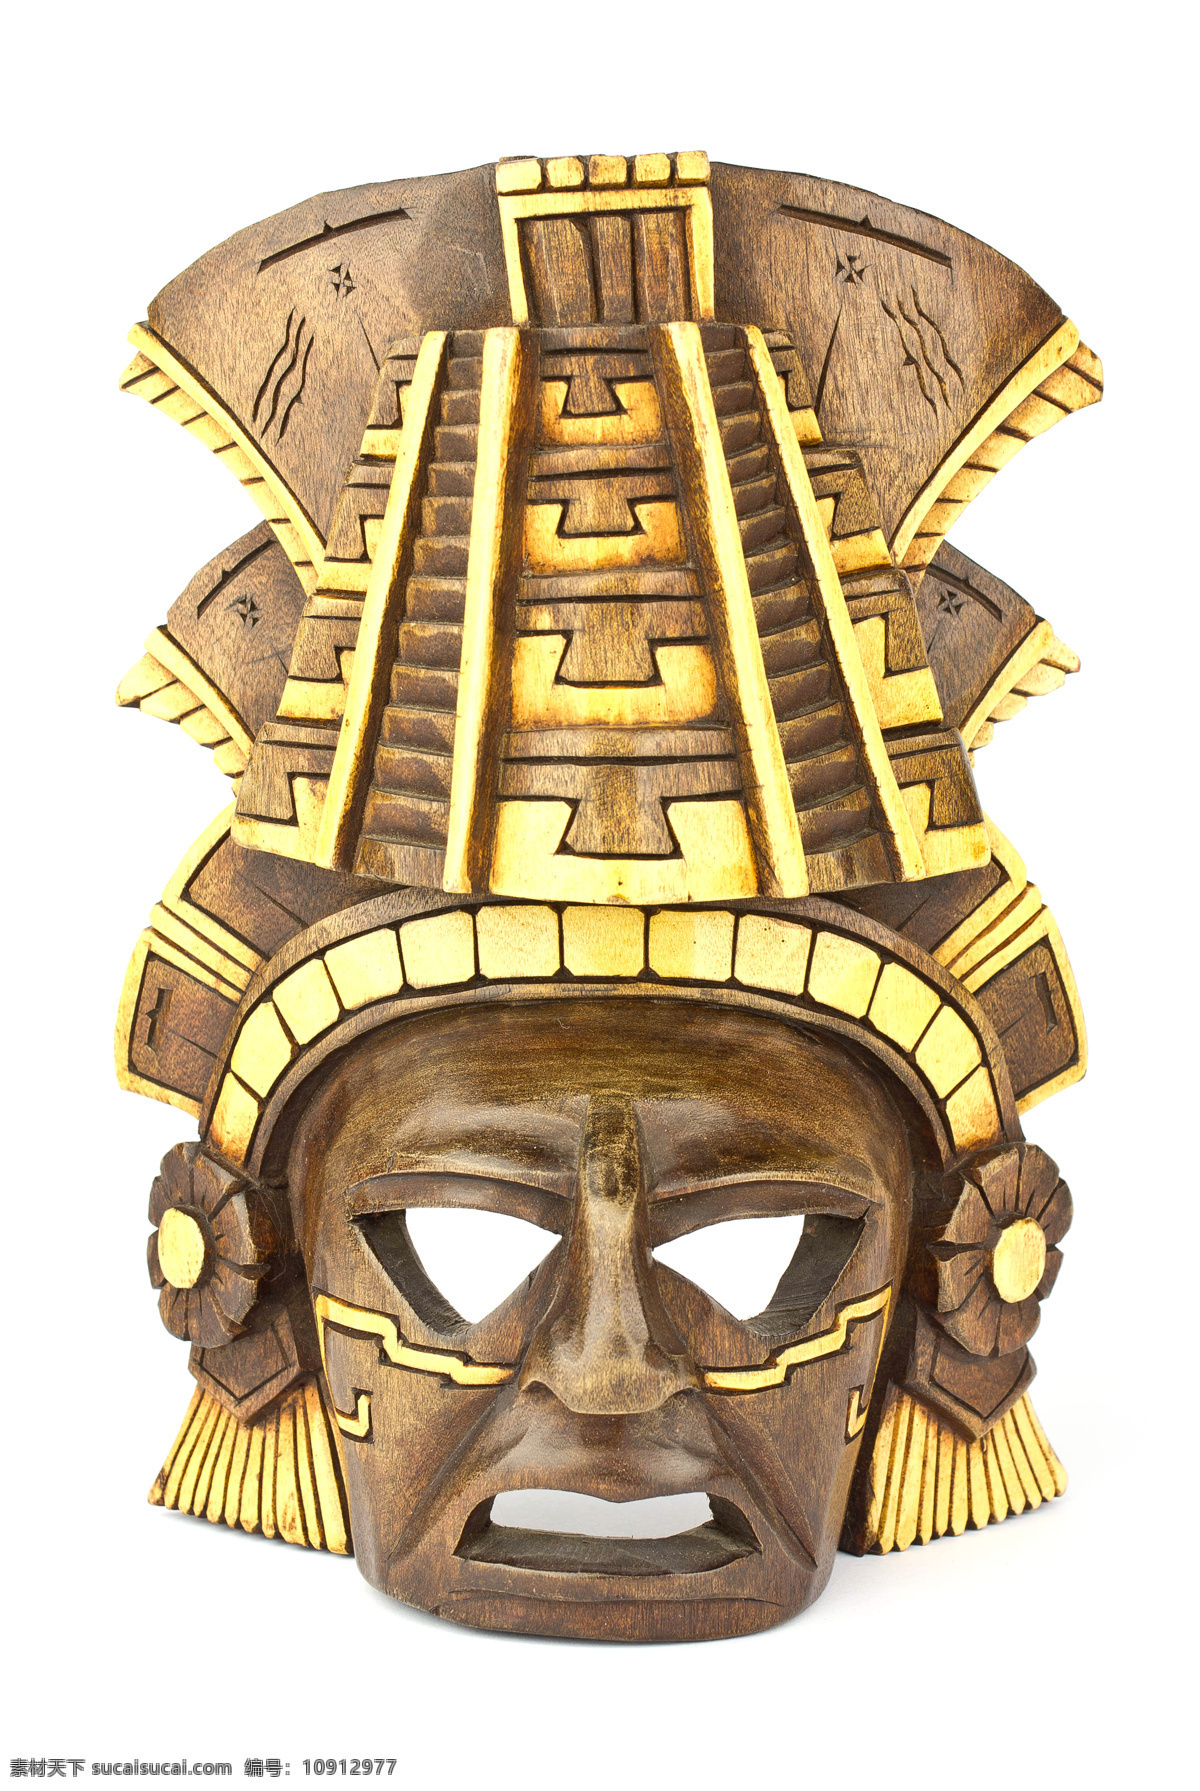 墨西哥面具 木制面具 木面具 墨西哥元素 其他类别 生活百科 白色